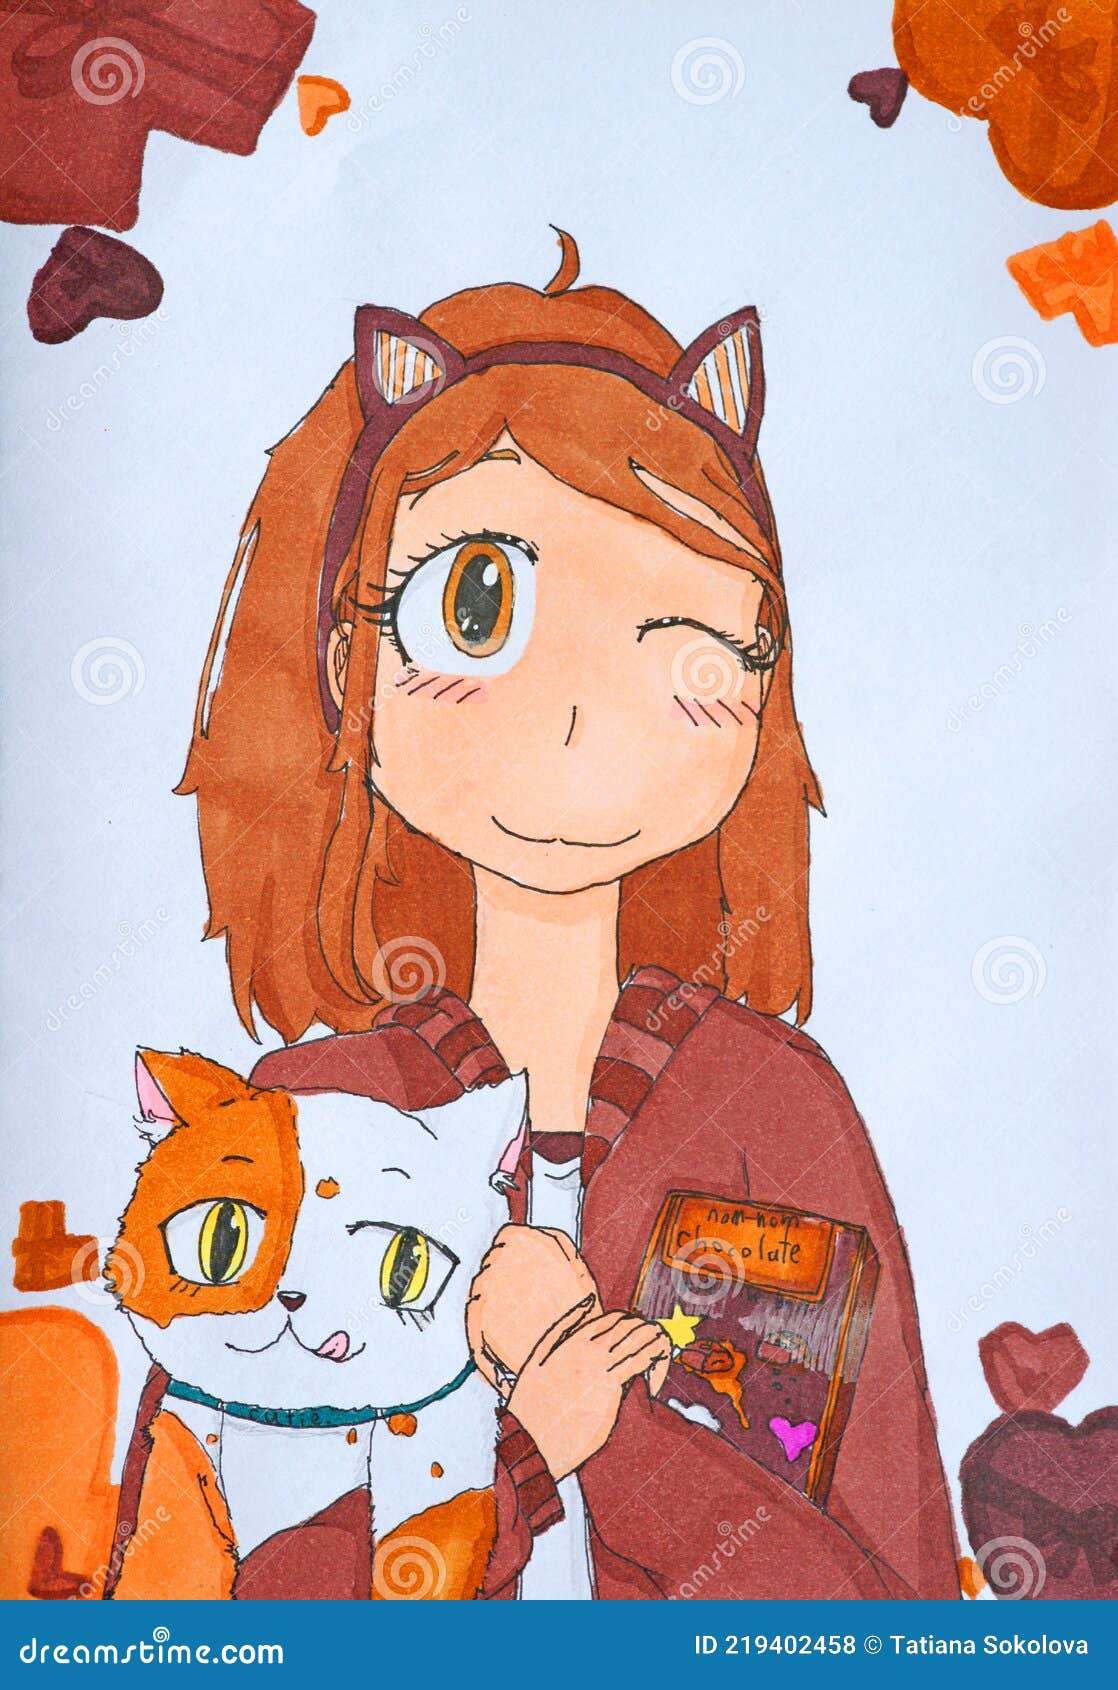 Dibujo De Una Chica Y Un Gato Rojo En Estilo Anime Foto de archivo - Imagen  de rojo, blanco: 219402458